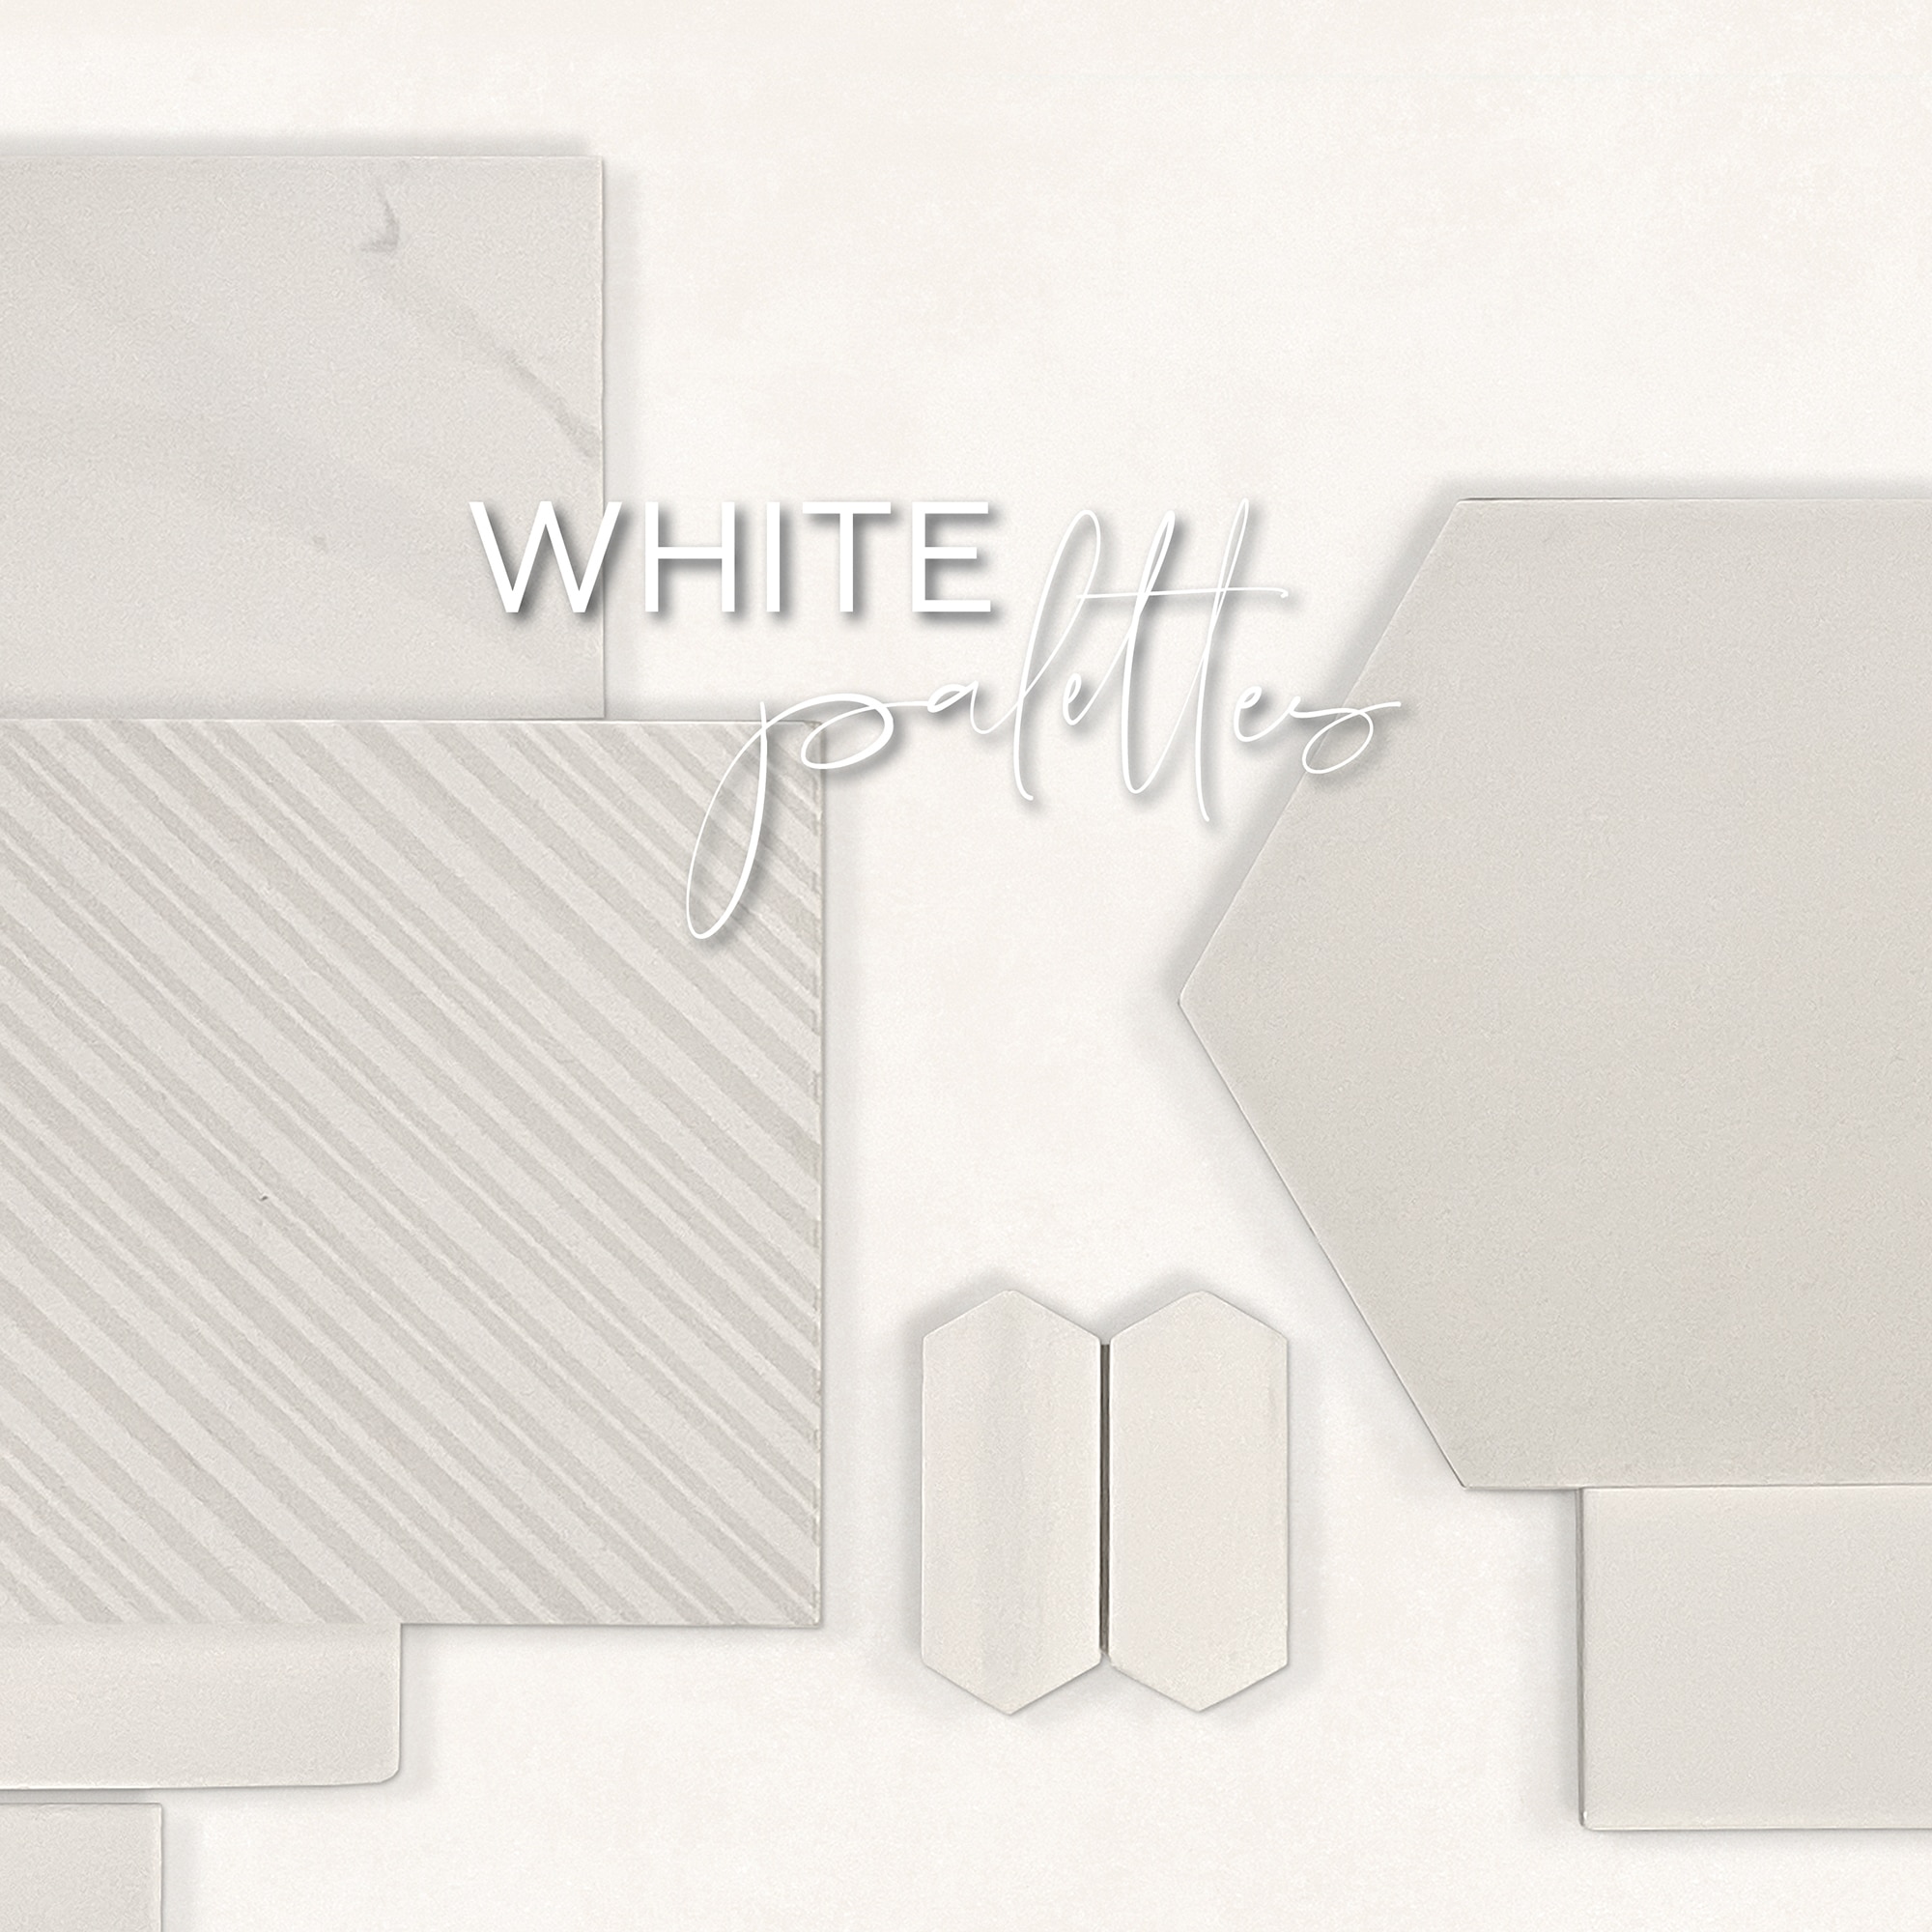 White Color Palettes